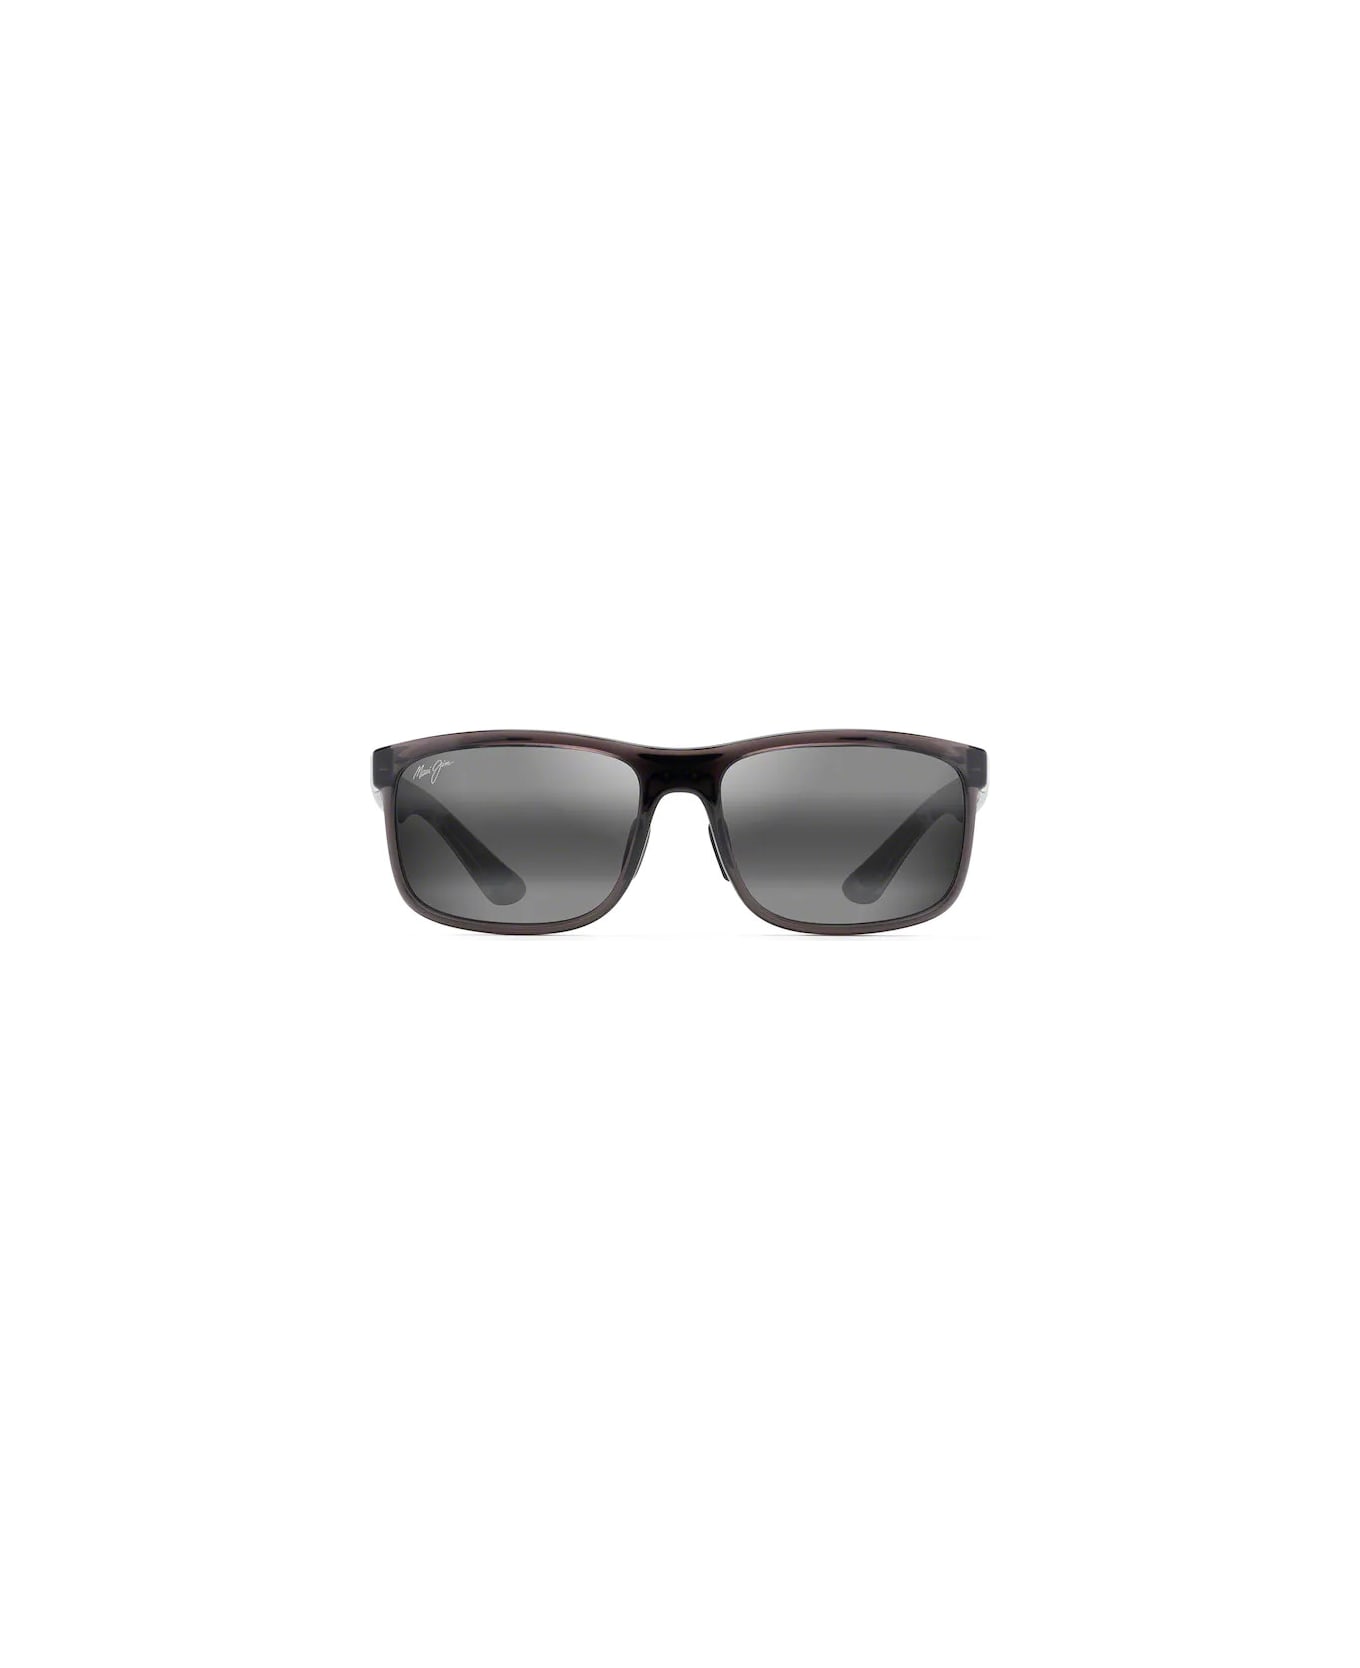 Maui Jim MJ449-11 Sunglasses - Grigio サングラス